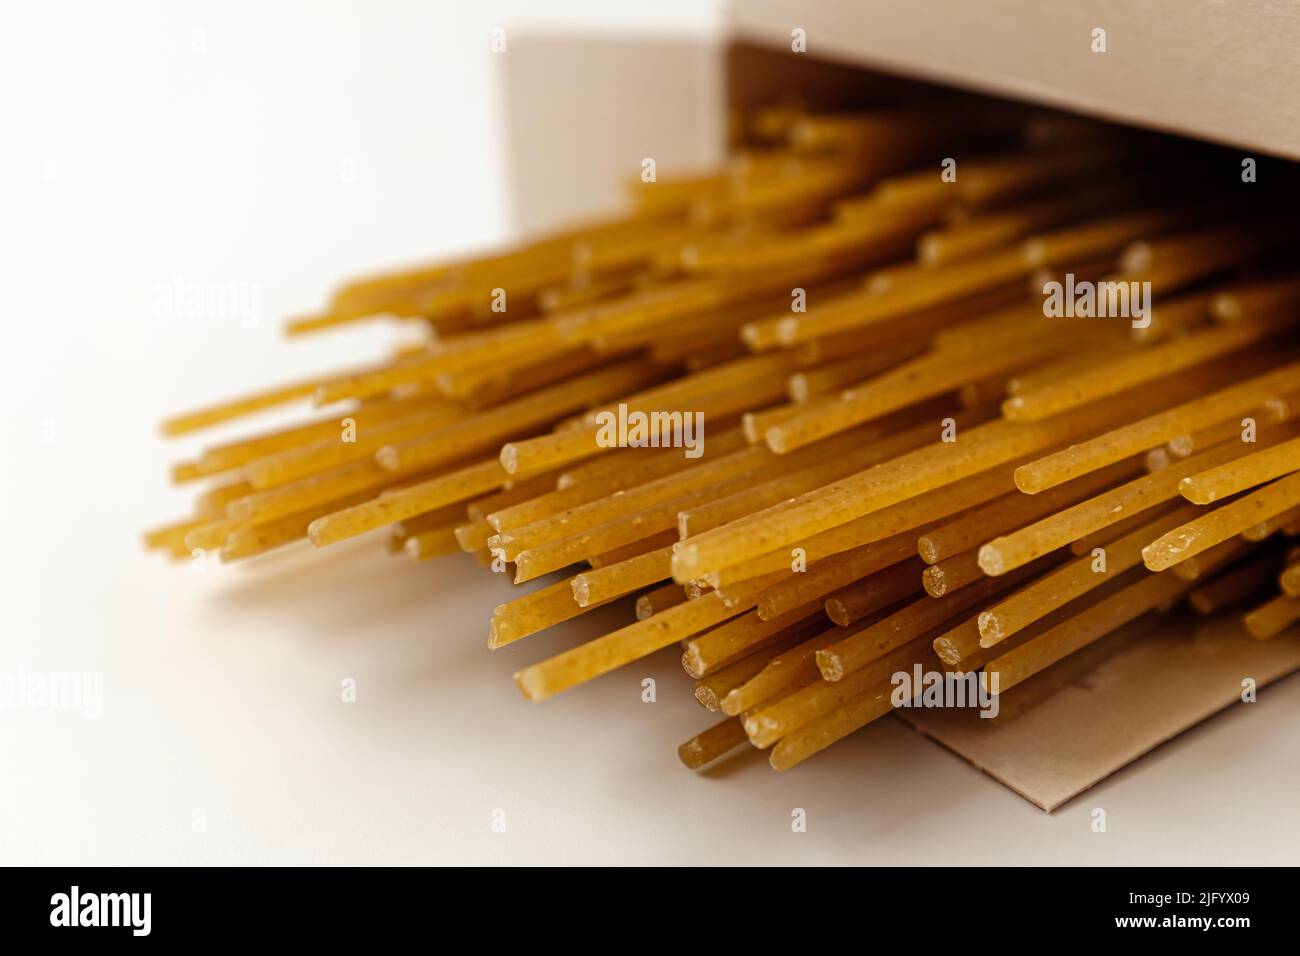 Spaghetti de blé entier sur fond blanc Banque D'Images